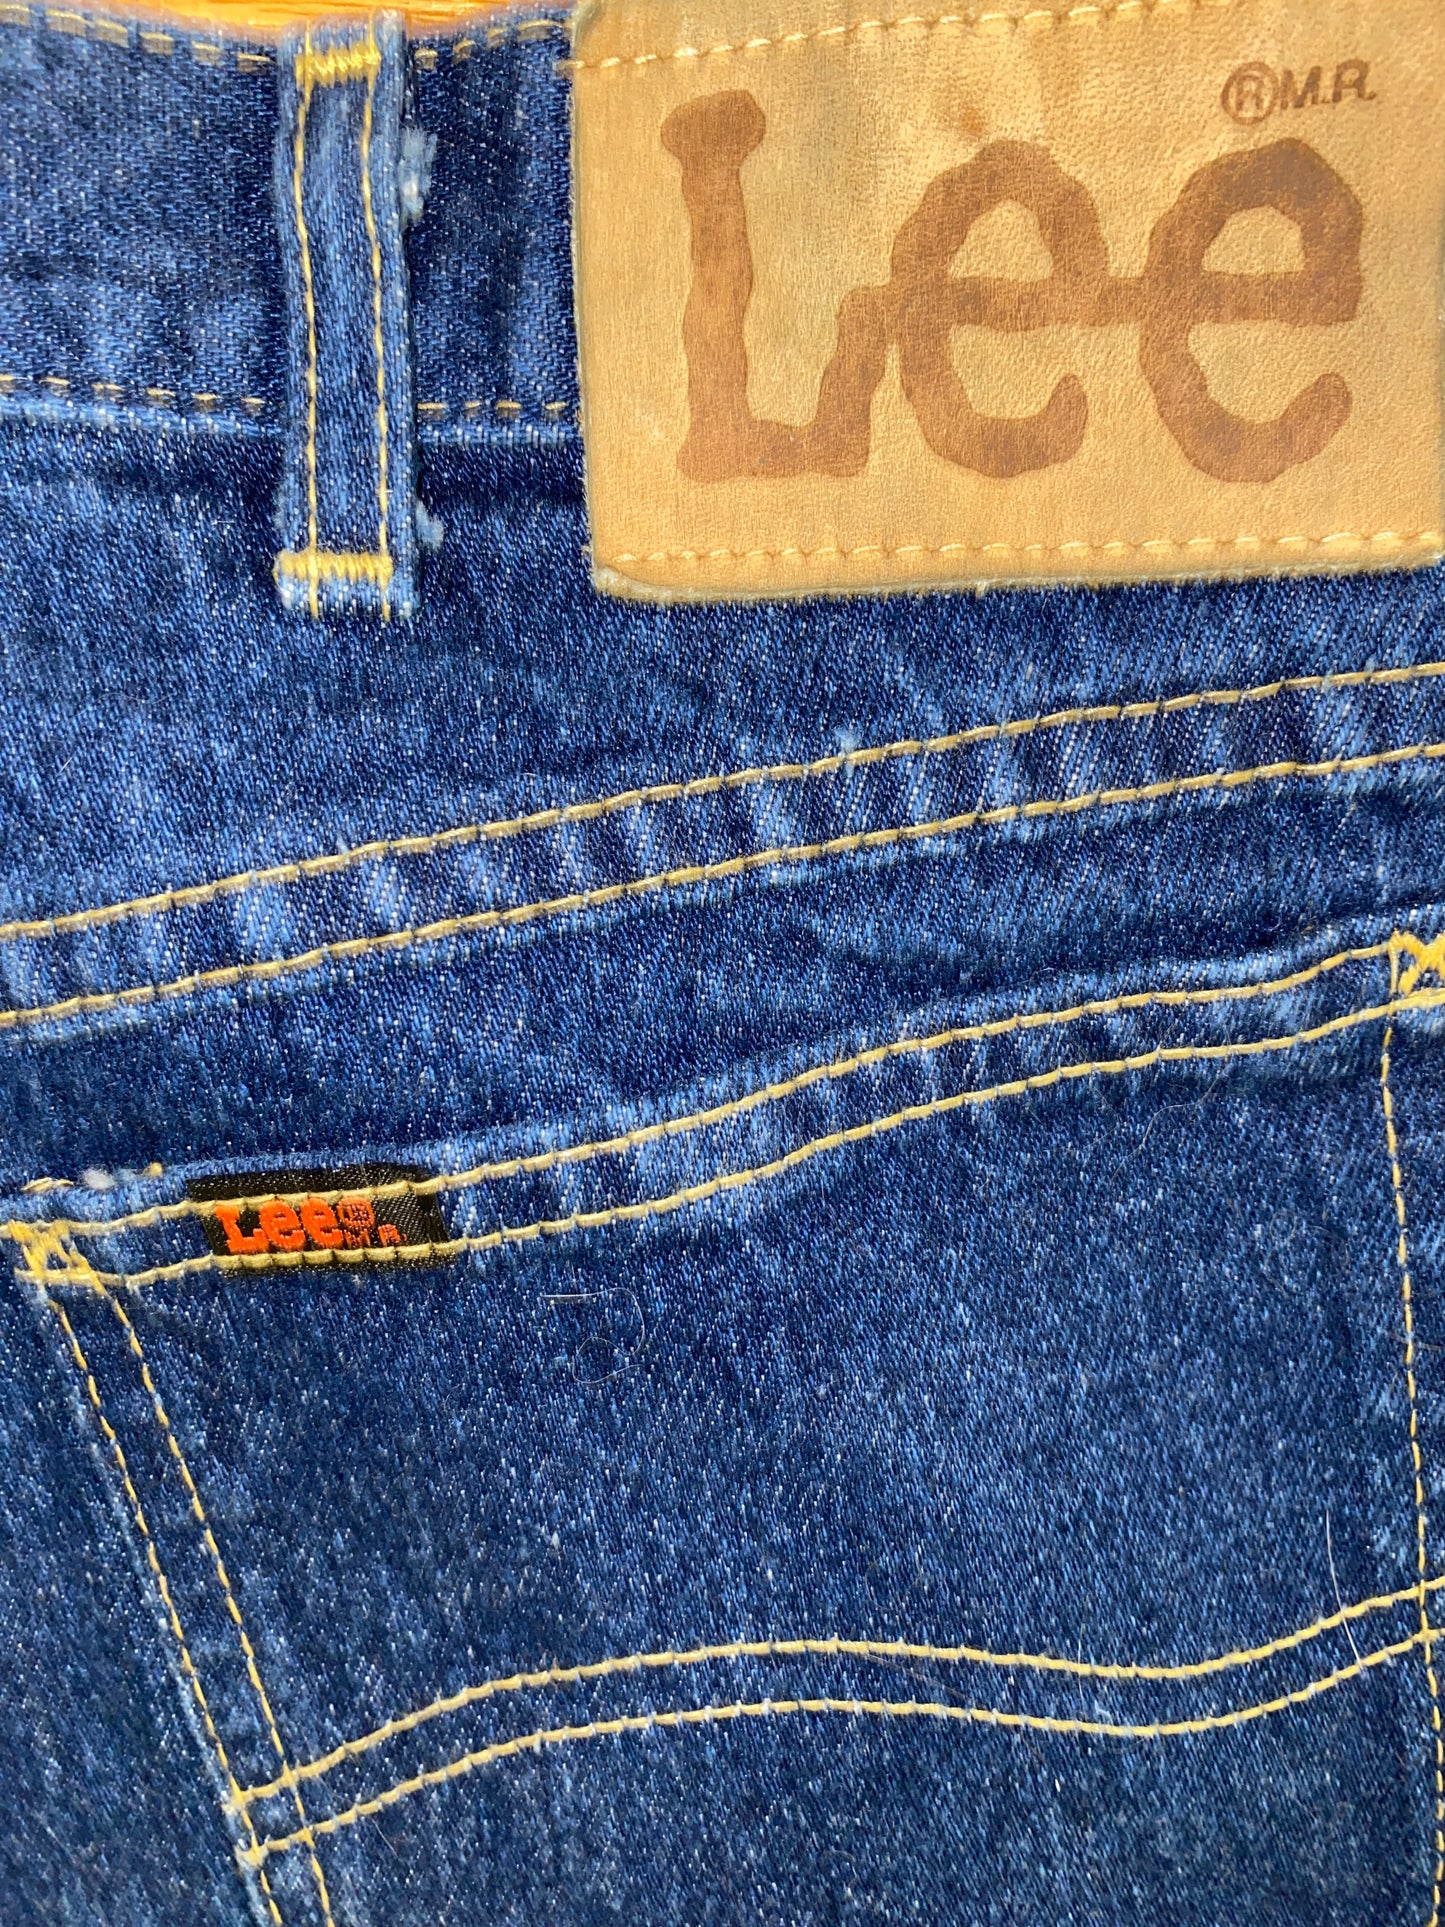 1990s Lee Rider Denim Jeans